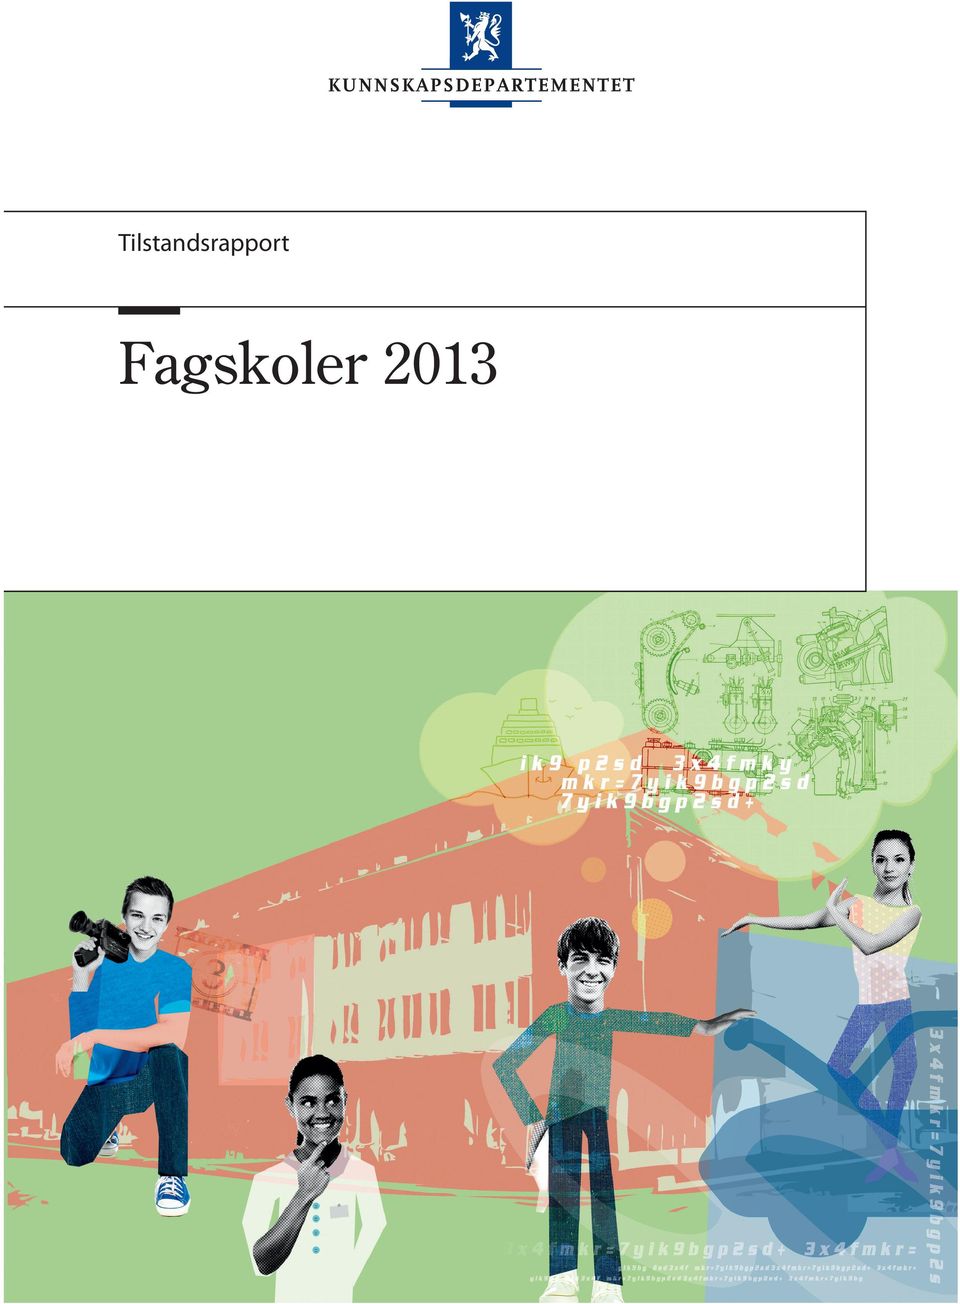 no/kd Fagskoler 2013 Publikasjonskode: F-4395 B Omslagsillustrasjon: Gjerholm